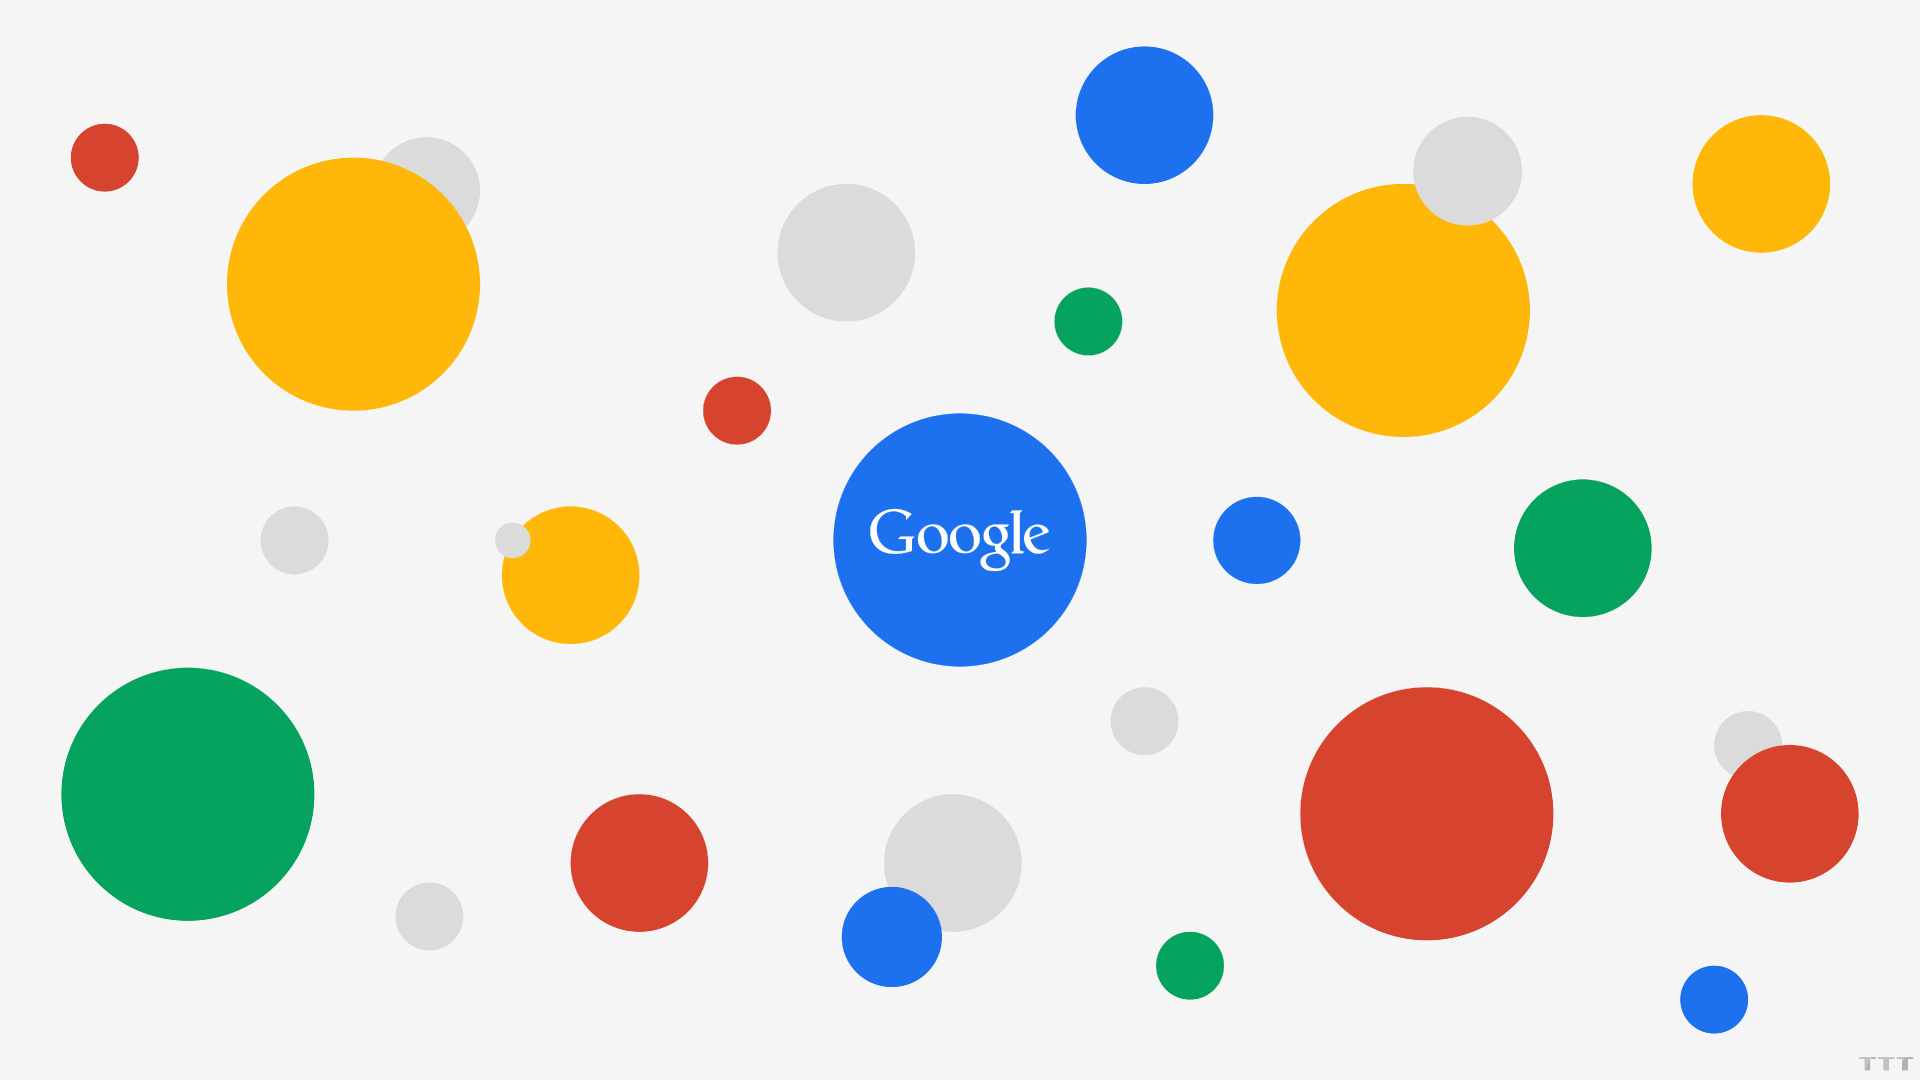 谷歌, 谷歌的广告, 互联网, 黄色的, 圆圈 壁纸 1920x1080 允许